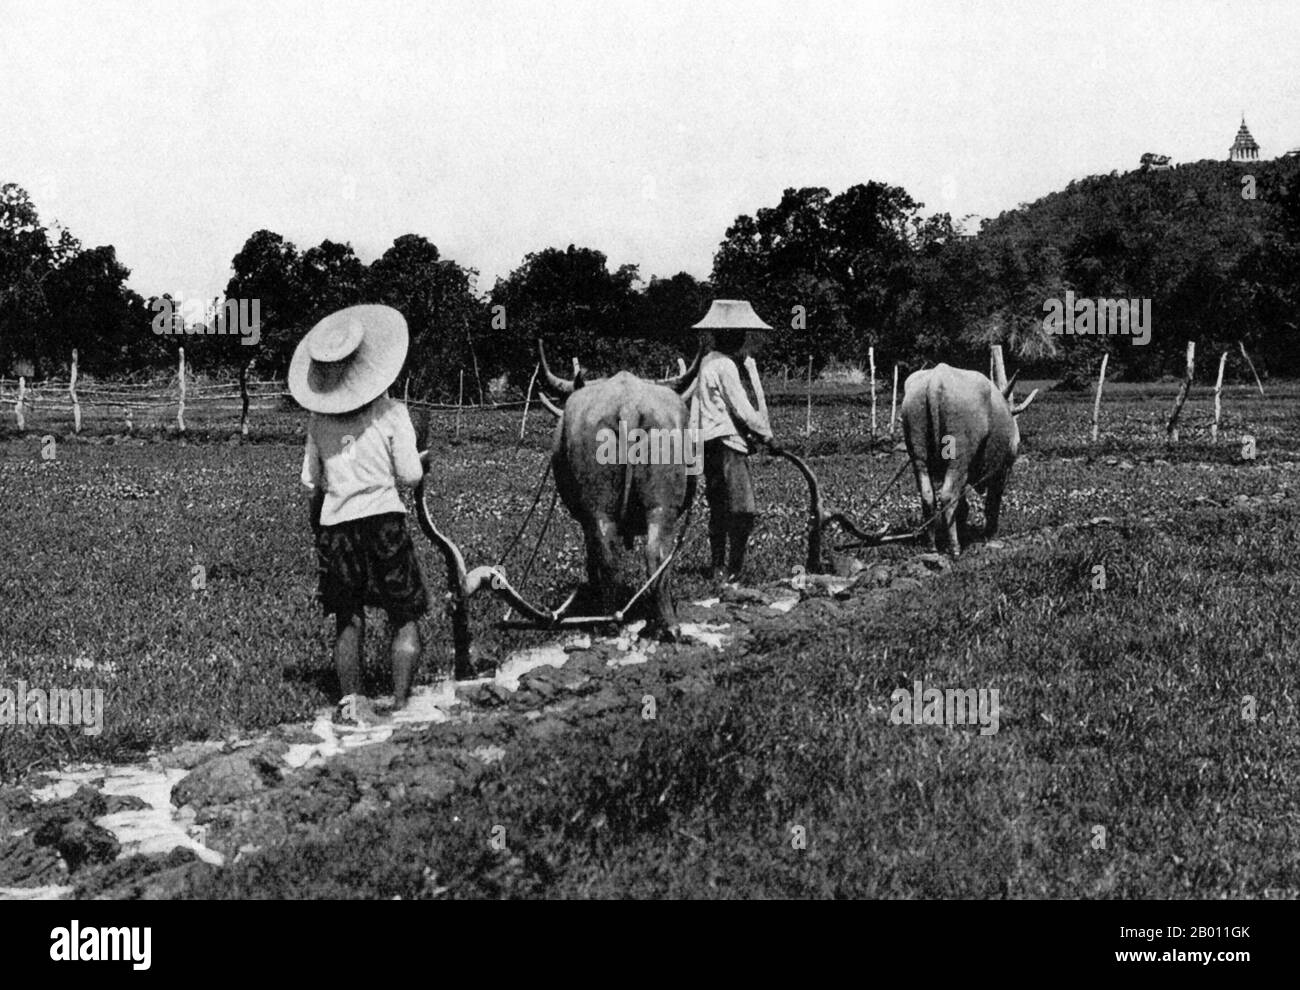 Thailand: Siamesische Bauern pflügen Ende des 19. Jahrhunderts ein Reisfeld mit Wasserbüffeln. Während der Regierungszeit von König Mongkut, König Rama IV. (1851-68) und König Chulalongkorn, Rama V. (1868-1910), waren die meisten Siamesen Reisbauern, die einfache Methoden und rudimentäre Werkzeuge zur Arbeit auf den Feldern verwendeten. Dennoch waren die Ernten aufgrund des Klimas und des fruchtbaren Bodens reichlich, und viele Bauern konnten drei Ernten pro Jahr produzieren. Vor der Modernisierungsmaßnahme der Könige mussten Siams Bauern ein Viertel ihrer Reisernten dem König als Steuer geben. Stockfoto